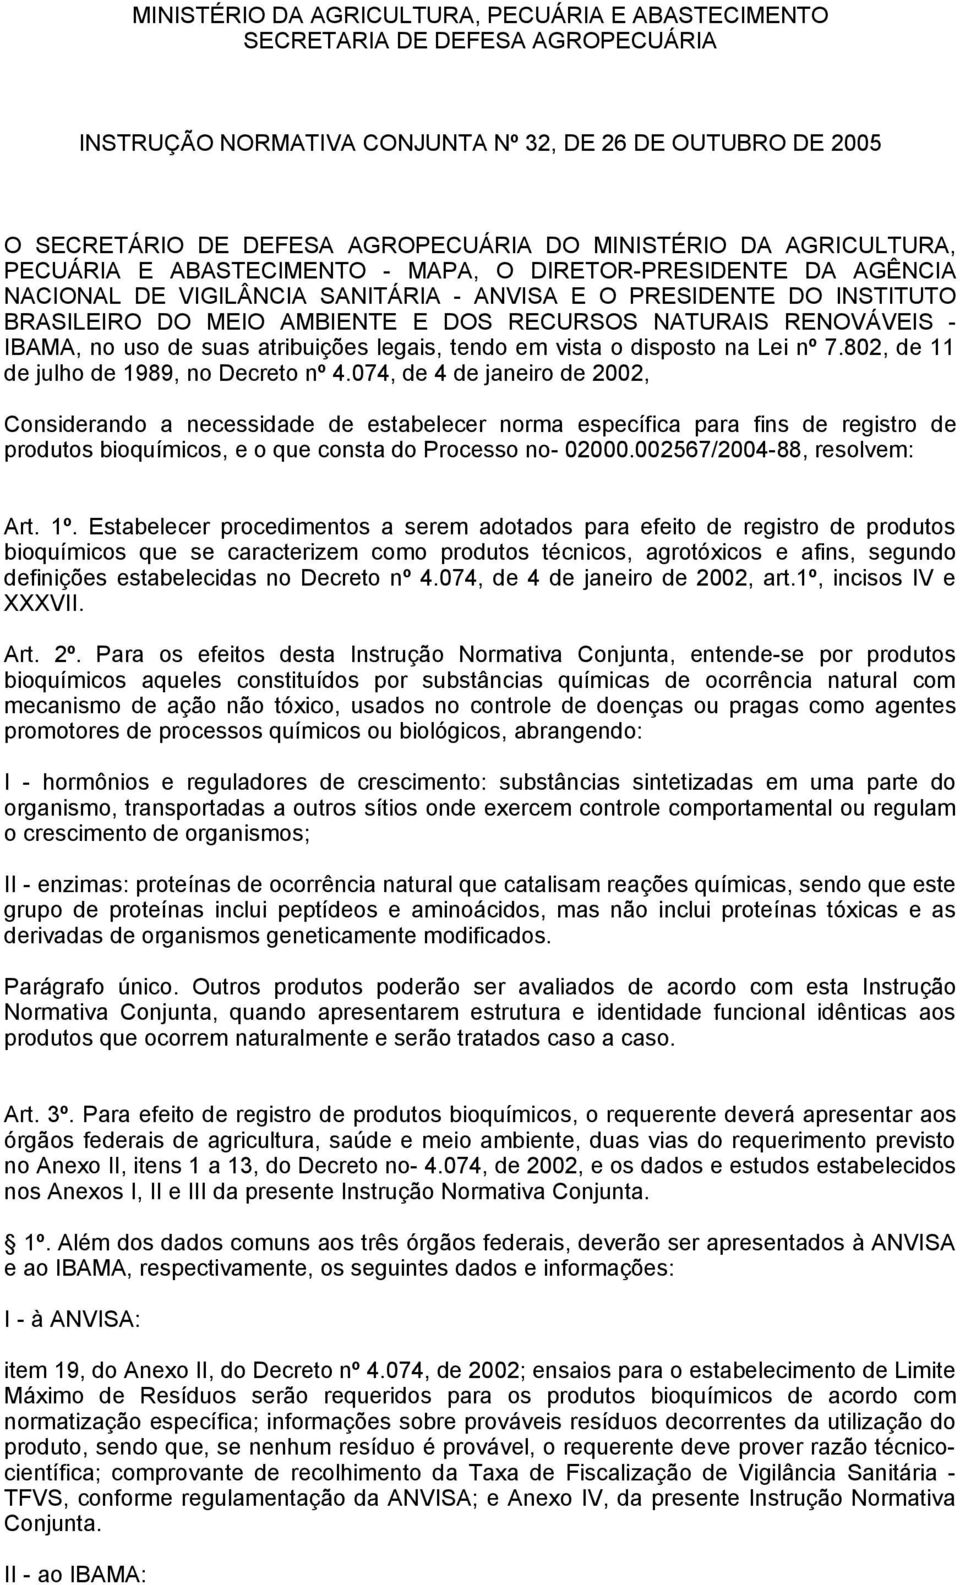 RENOVÁVEIS - IBAMA, no uso de suas atribuições legais, tendo em vista o disposto na Lei nº 7.802, de 11 de julho de 1989, no Decreto nº 4.